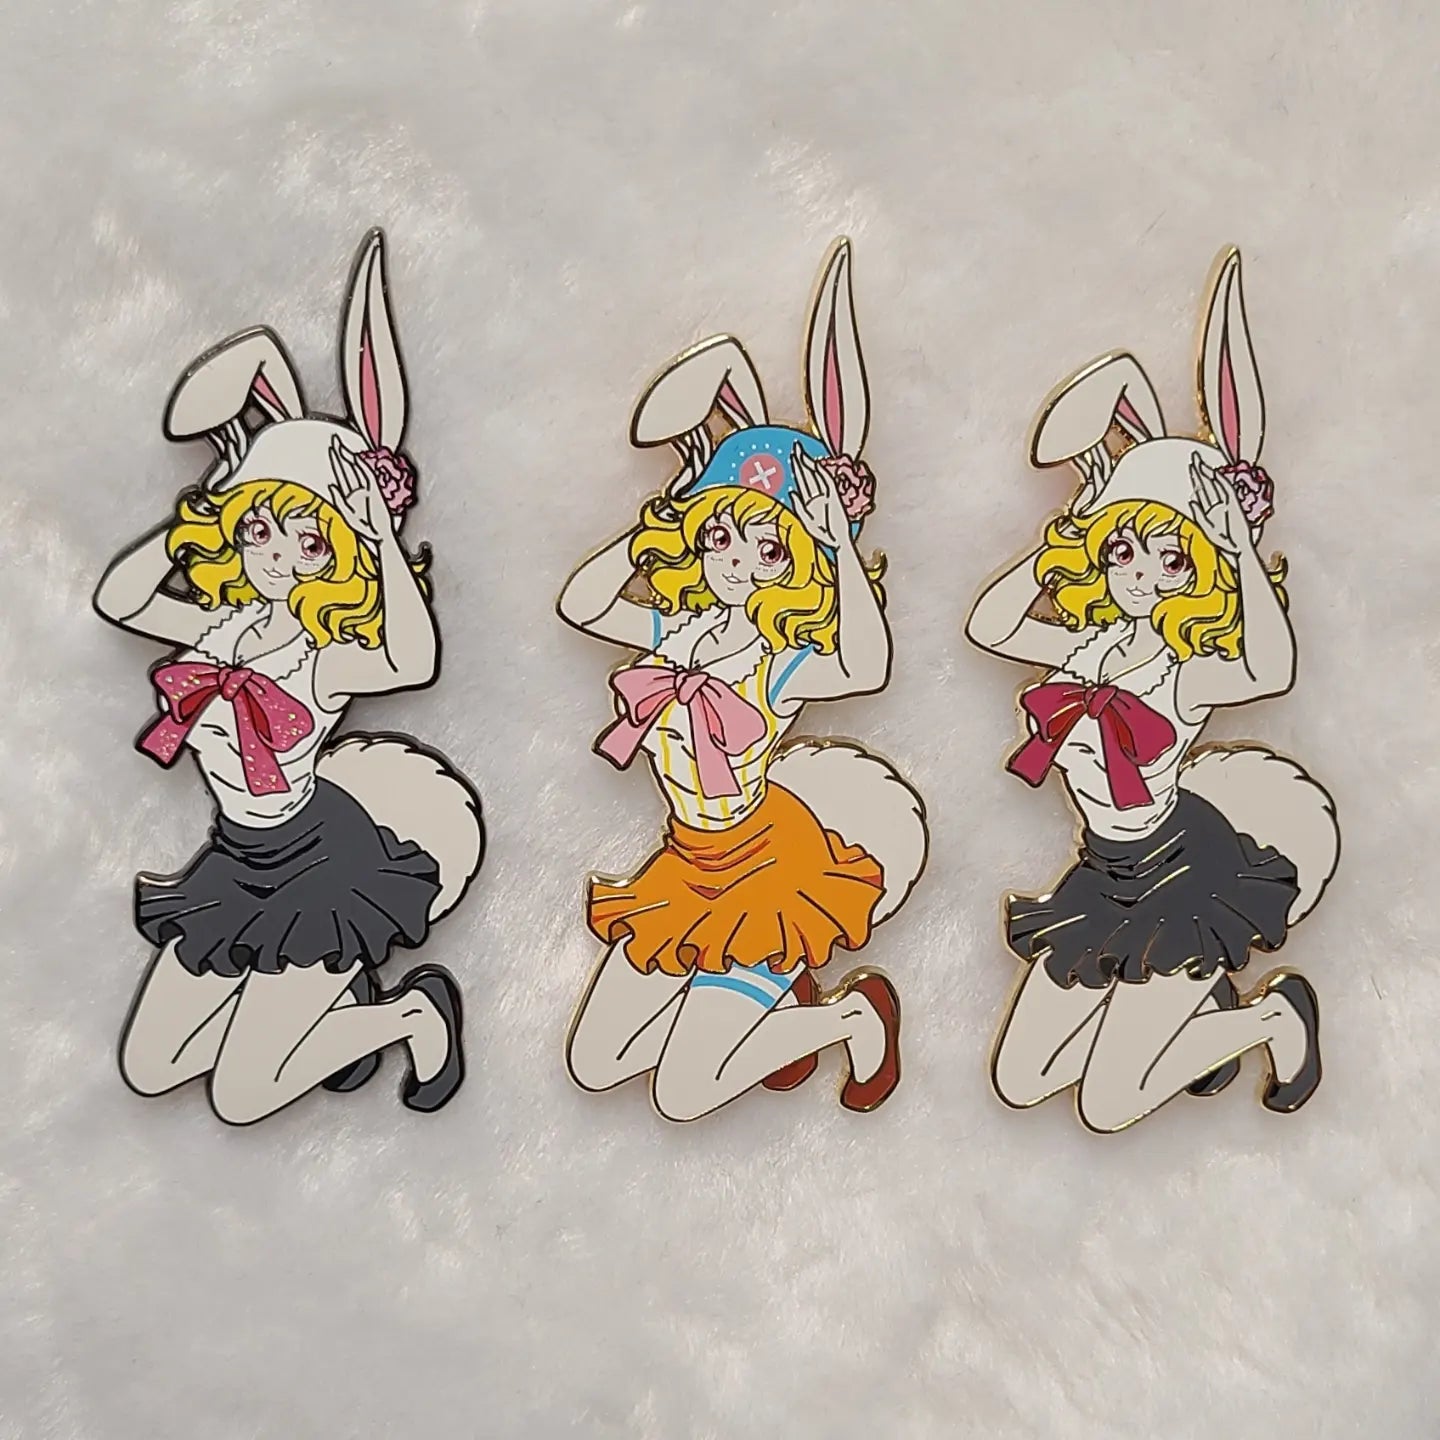 Bunny Girl Hard Enamel Pin